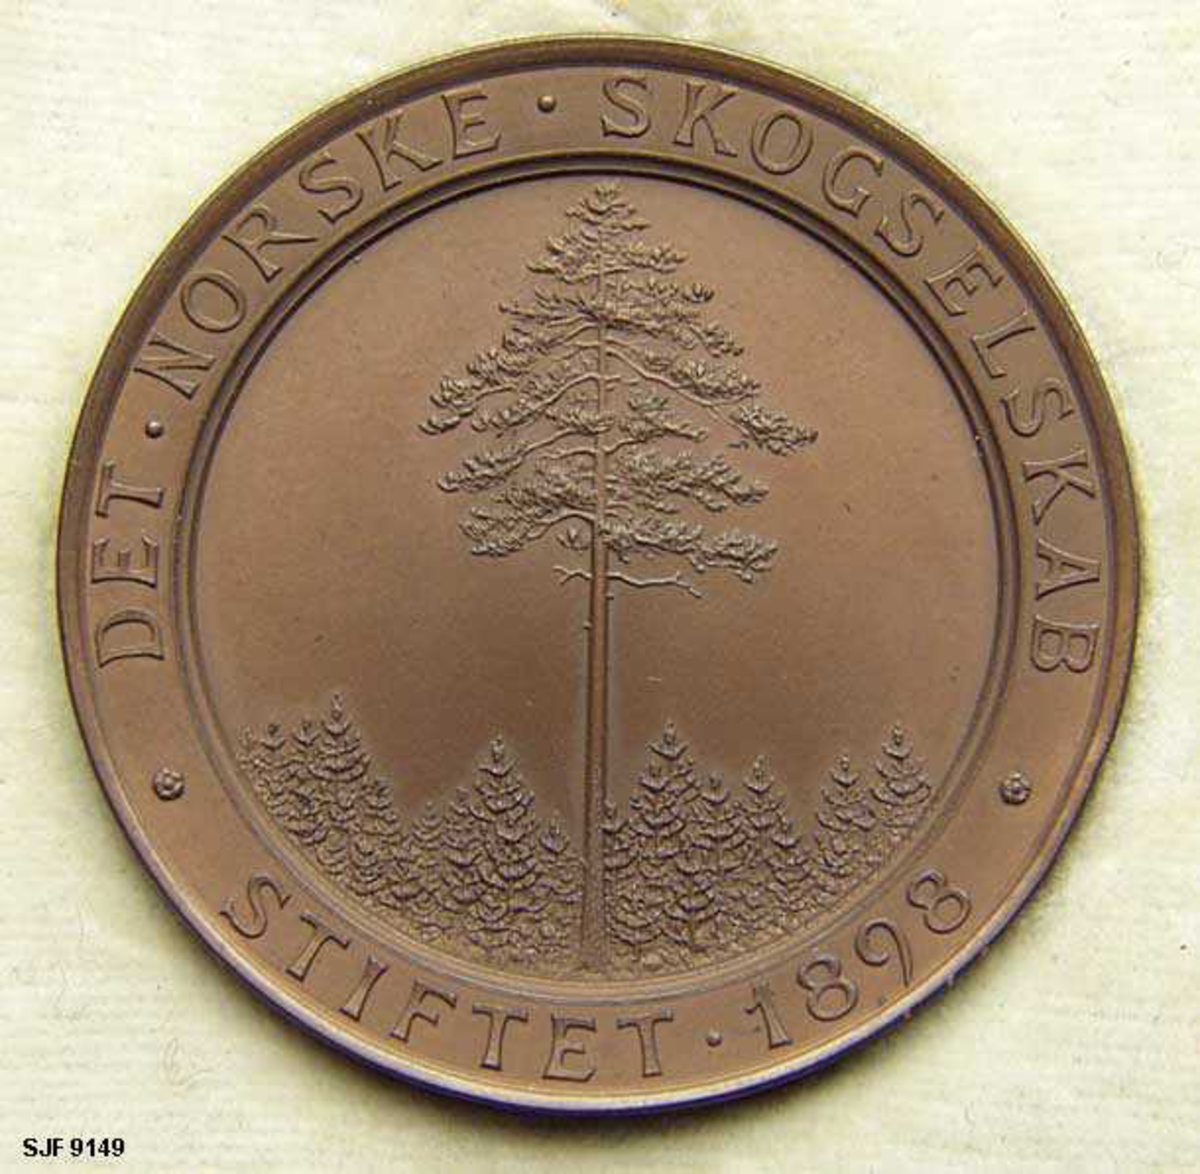 Rund bronsemedalje, lagd for Det norske Skogselskap av medaljøren Ivar Throndsen (1853-1952) på Kongsberg. Medaljen er sikrkelrund og har en diameter på 4,3 centimeter og er 3,5 millimeter tjukk. På forsida er det et relieff av ei diger furu, et frøtre, med mye underskog. Omkring dette motivet er det en sirkel med teksten «DET NORSKE SKOGSELSKAB  STIFTET 1898». På baksida finner vi mottoet «VI VIL ET SKOGKLÆDT NORGE» omringet av en sirkelformet bladkrans. Medaljen ble avlevert til museet i originalemballasjen, et svartfarget, kvadratisk etiu (6,9 X 6,9 centimeter) som er snaut 1,8 centimeter høyt når lokket er gjenklappet. Lokket er hengslet, men den sidedeveggen det er hengslet på har løsnet. På motsatt side er det en påhengslet låsemekanisme. Puta på undersida av lokket er merket med pridusentens stempel - «I. THRONDSEN  MYNTGRAVEUR MEDAILLEUR  KONGSBERG». Medaljen ligger i en skålformet forsenkning på underdelens overside.